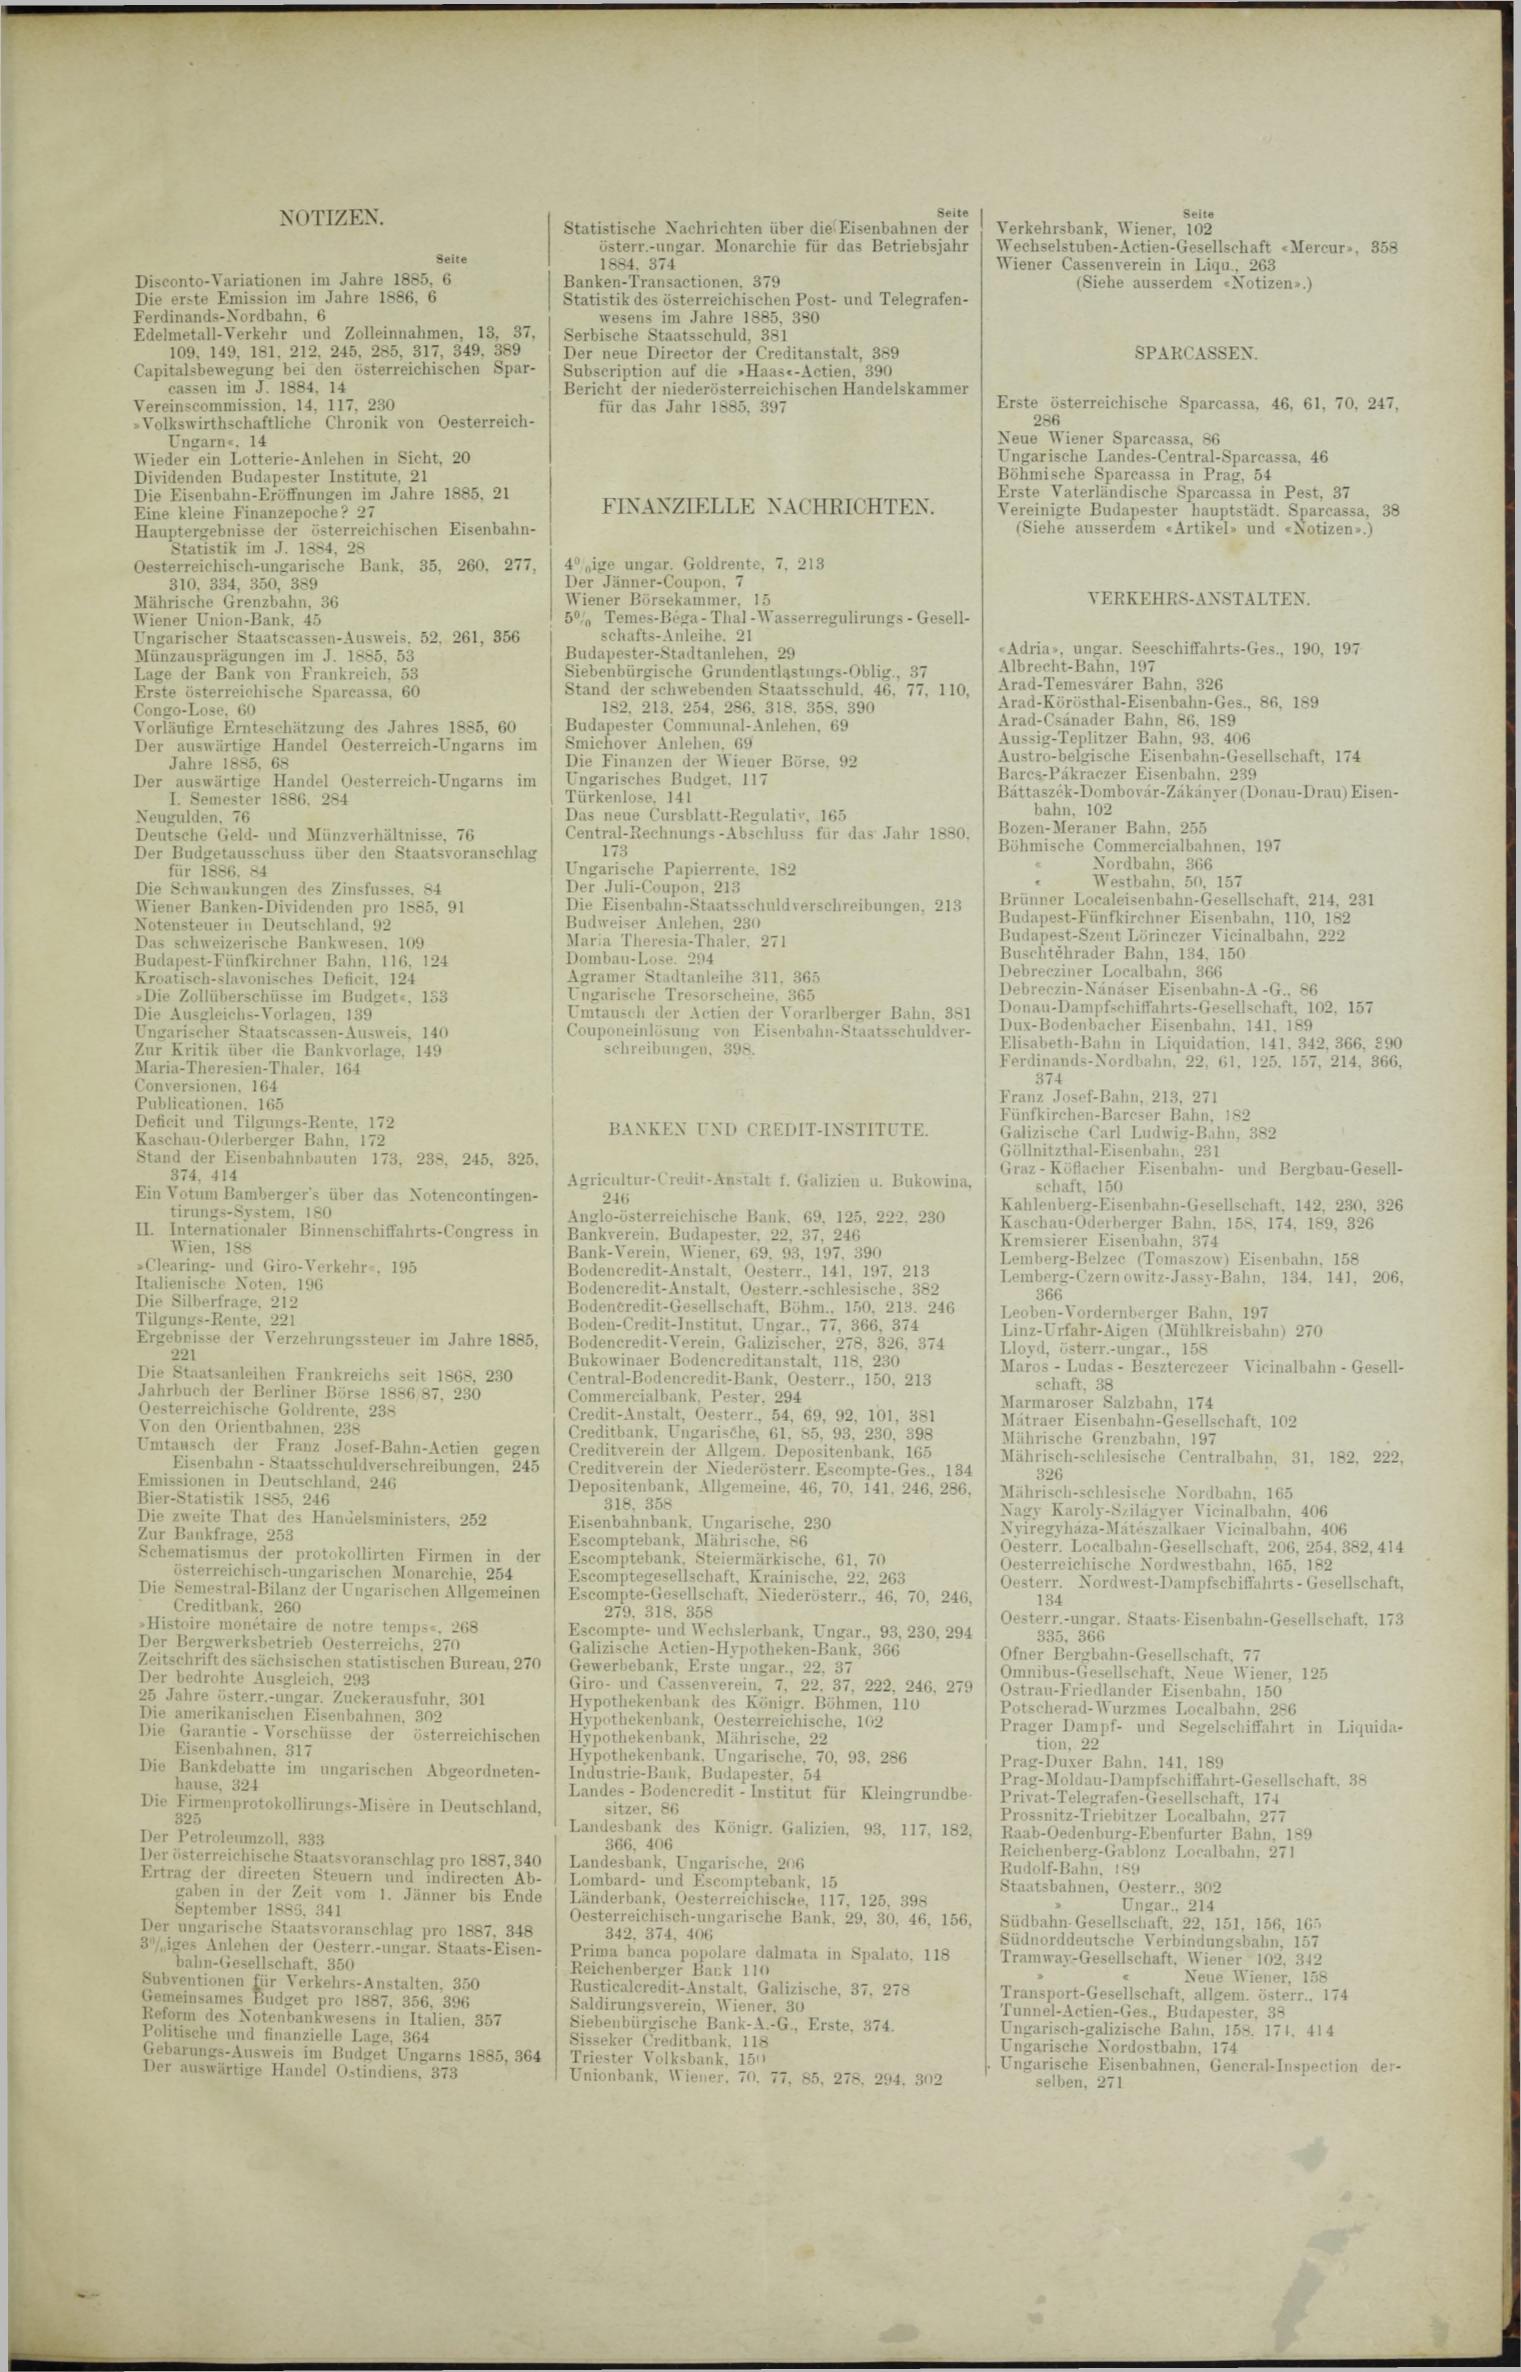 Der Tresor 18.03.1886 - Seite 11